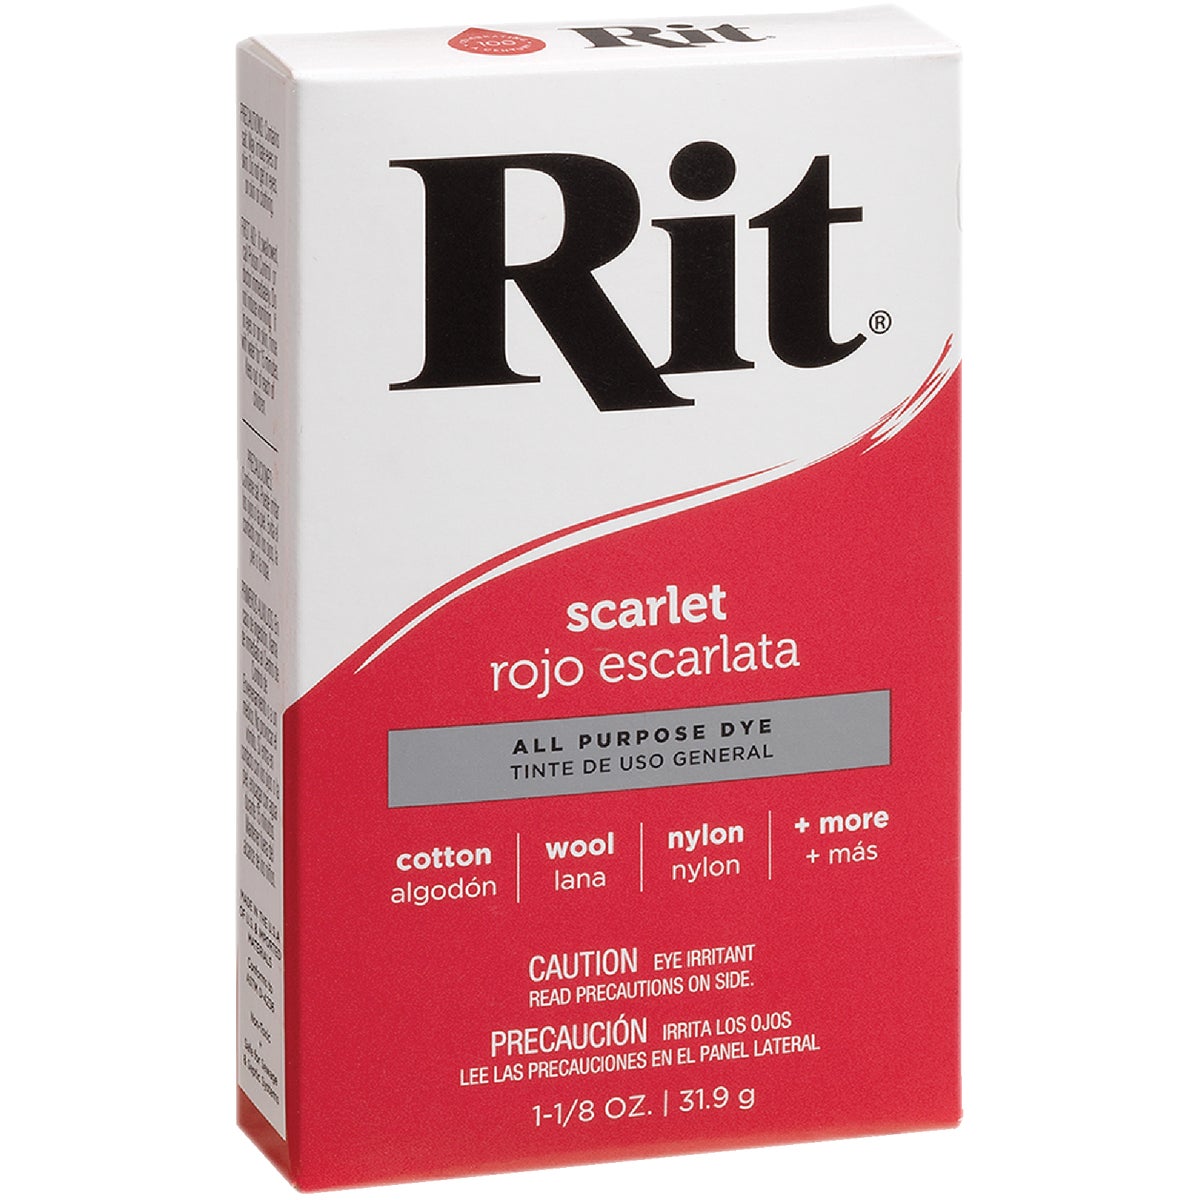 Rit Scarlet 1-1/8 Oz. Powder Dye